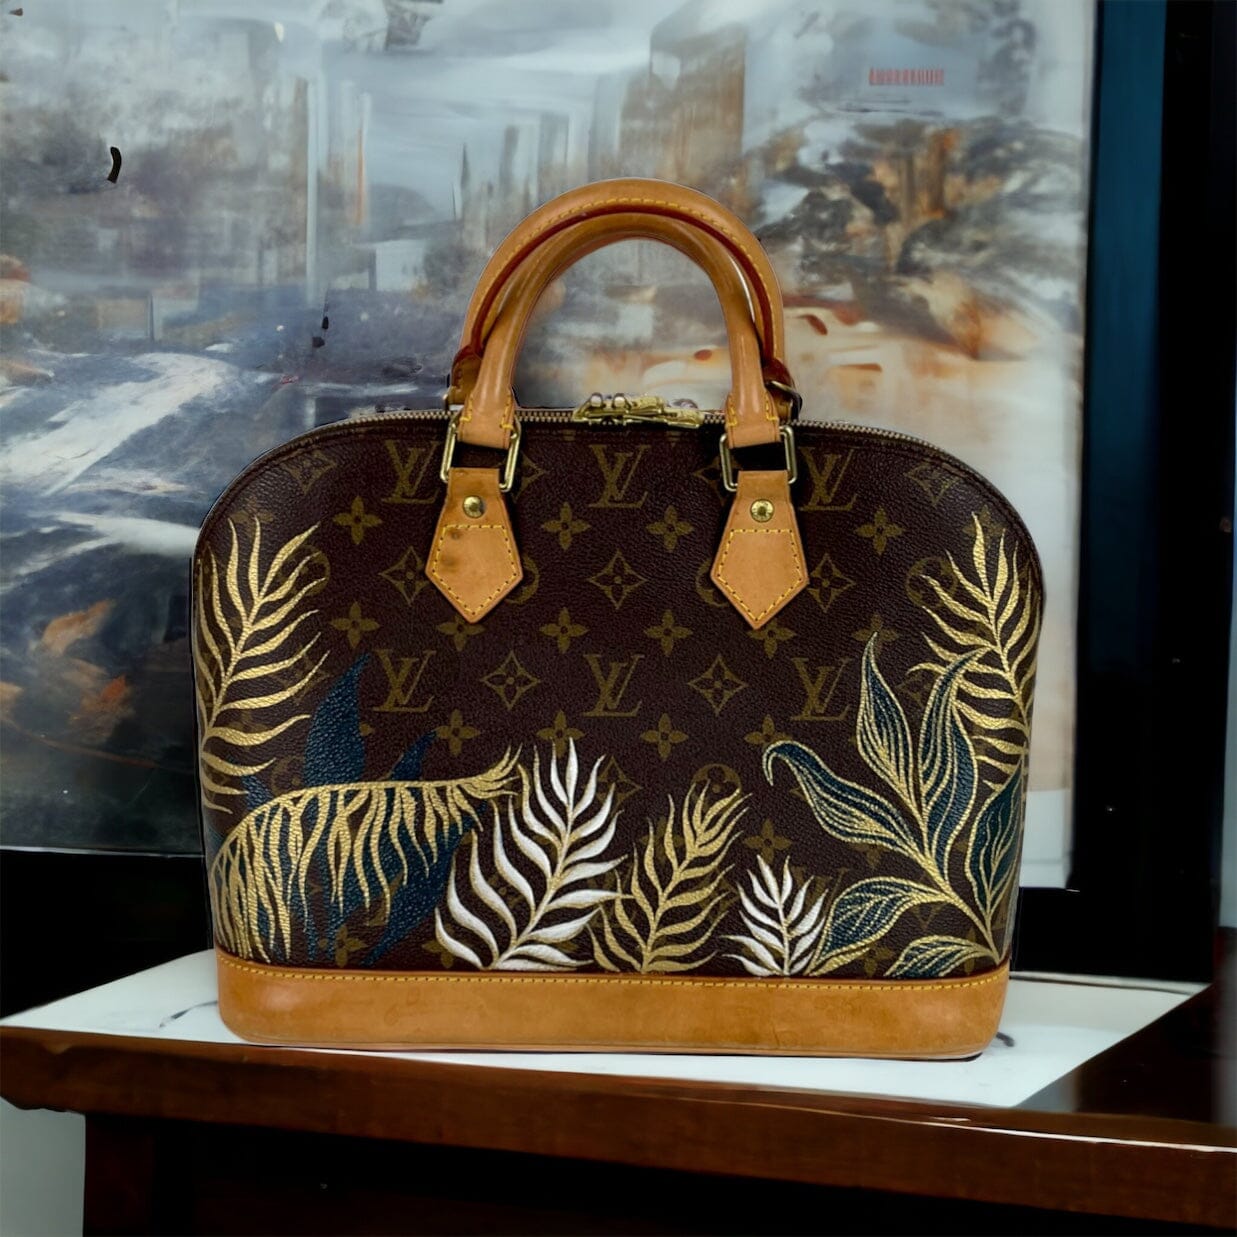 Louis Vuitton Alma PM in Multicoloured Monogram Handbag - Authentic Pre-Owned Designer Handbags